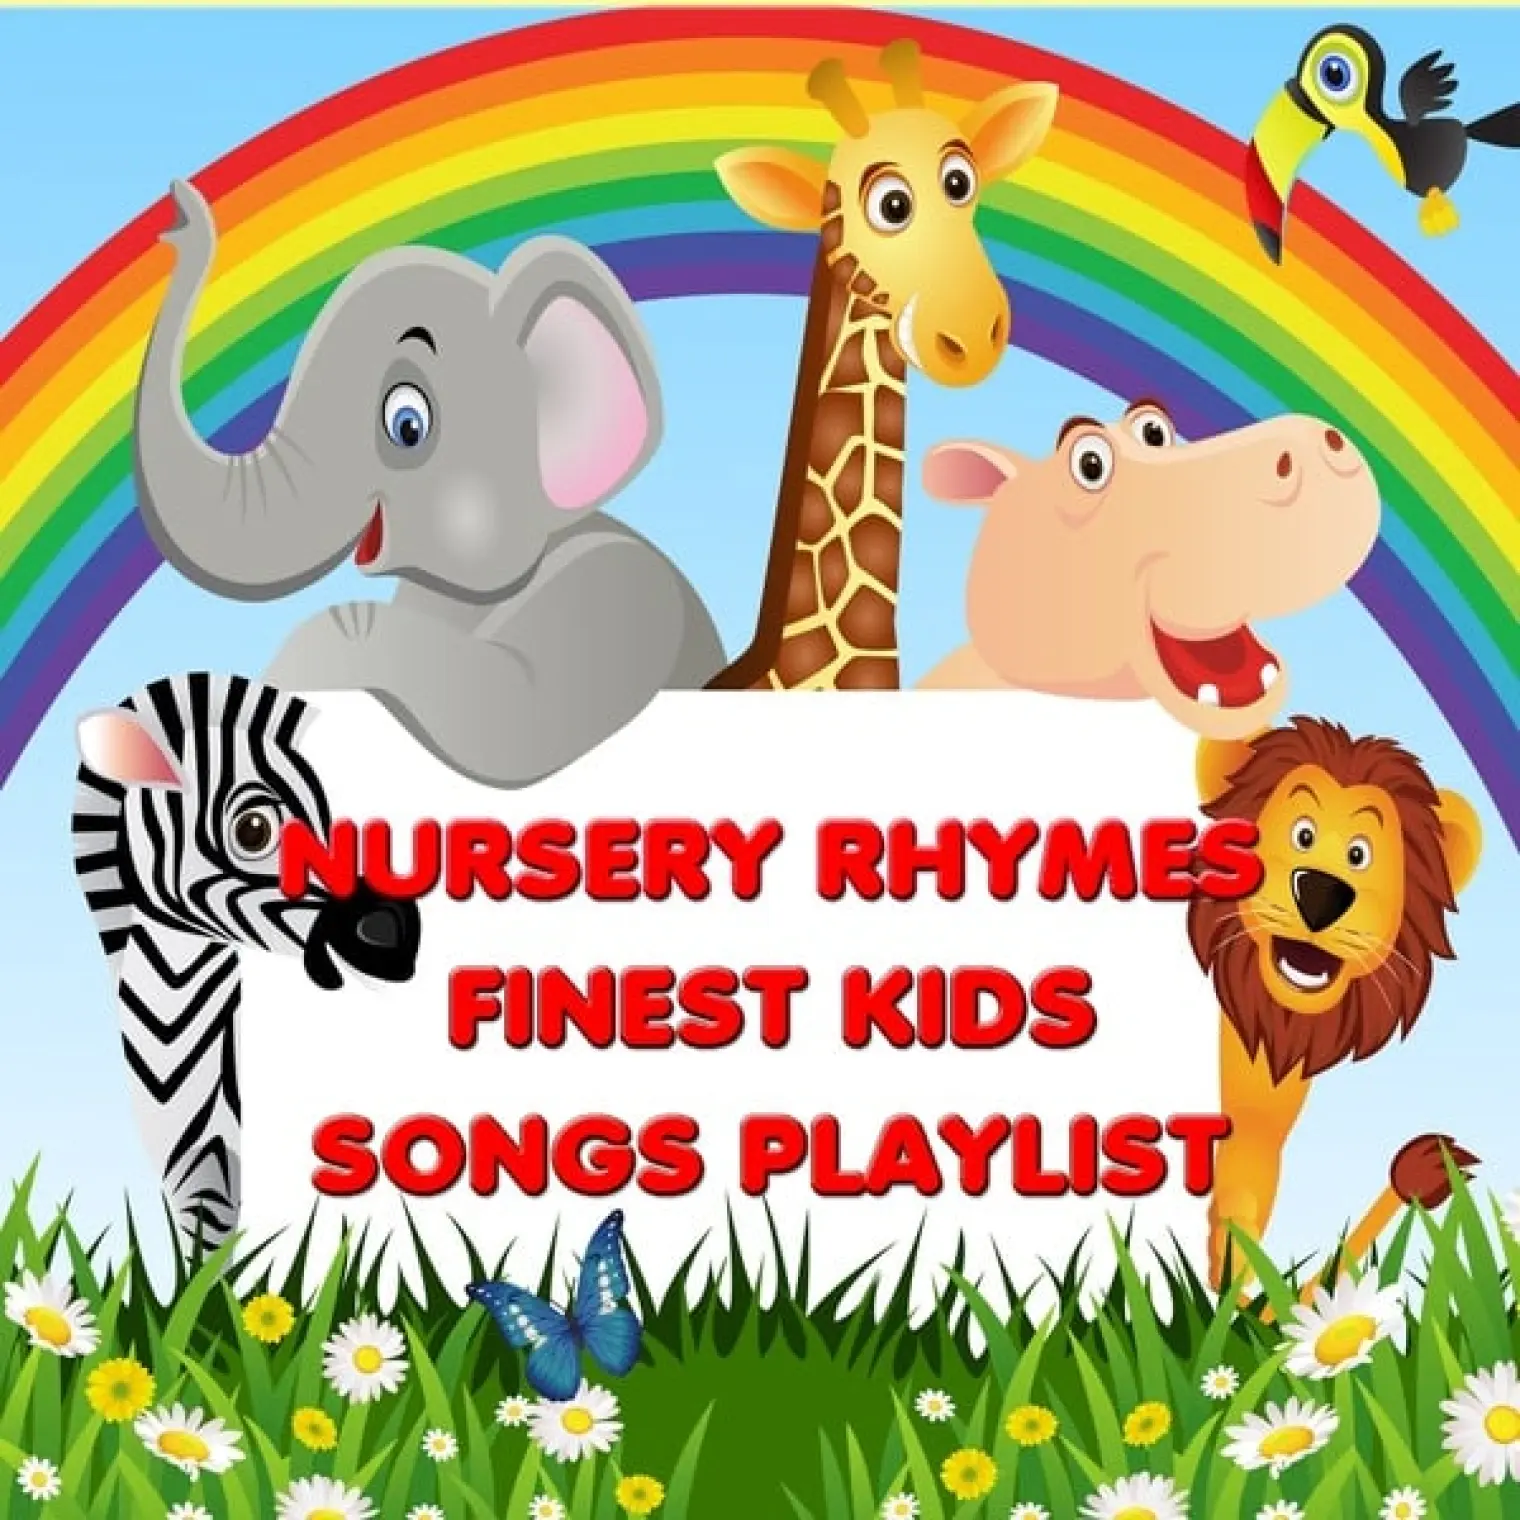 Nursery Rhymes - Finest Kids Songs Playlist (Best Kids Songs Collection) -  Kids Songs 